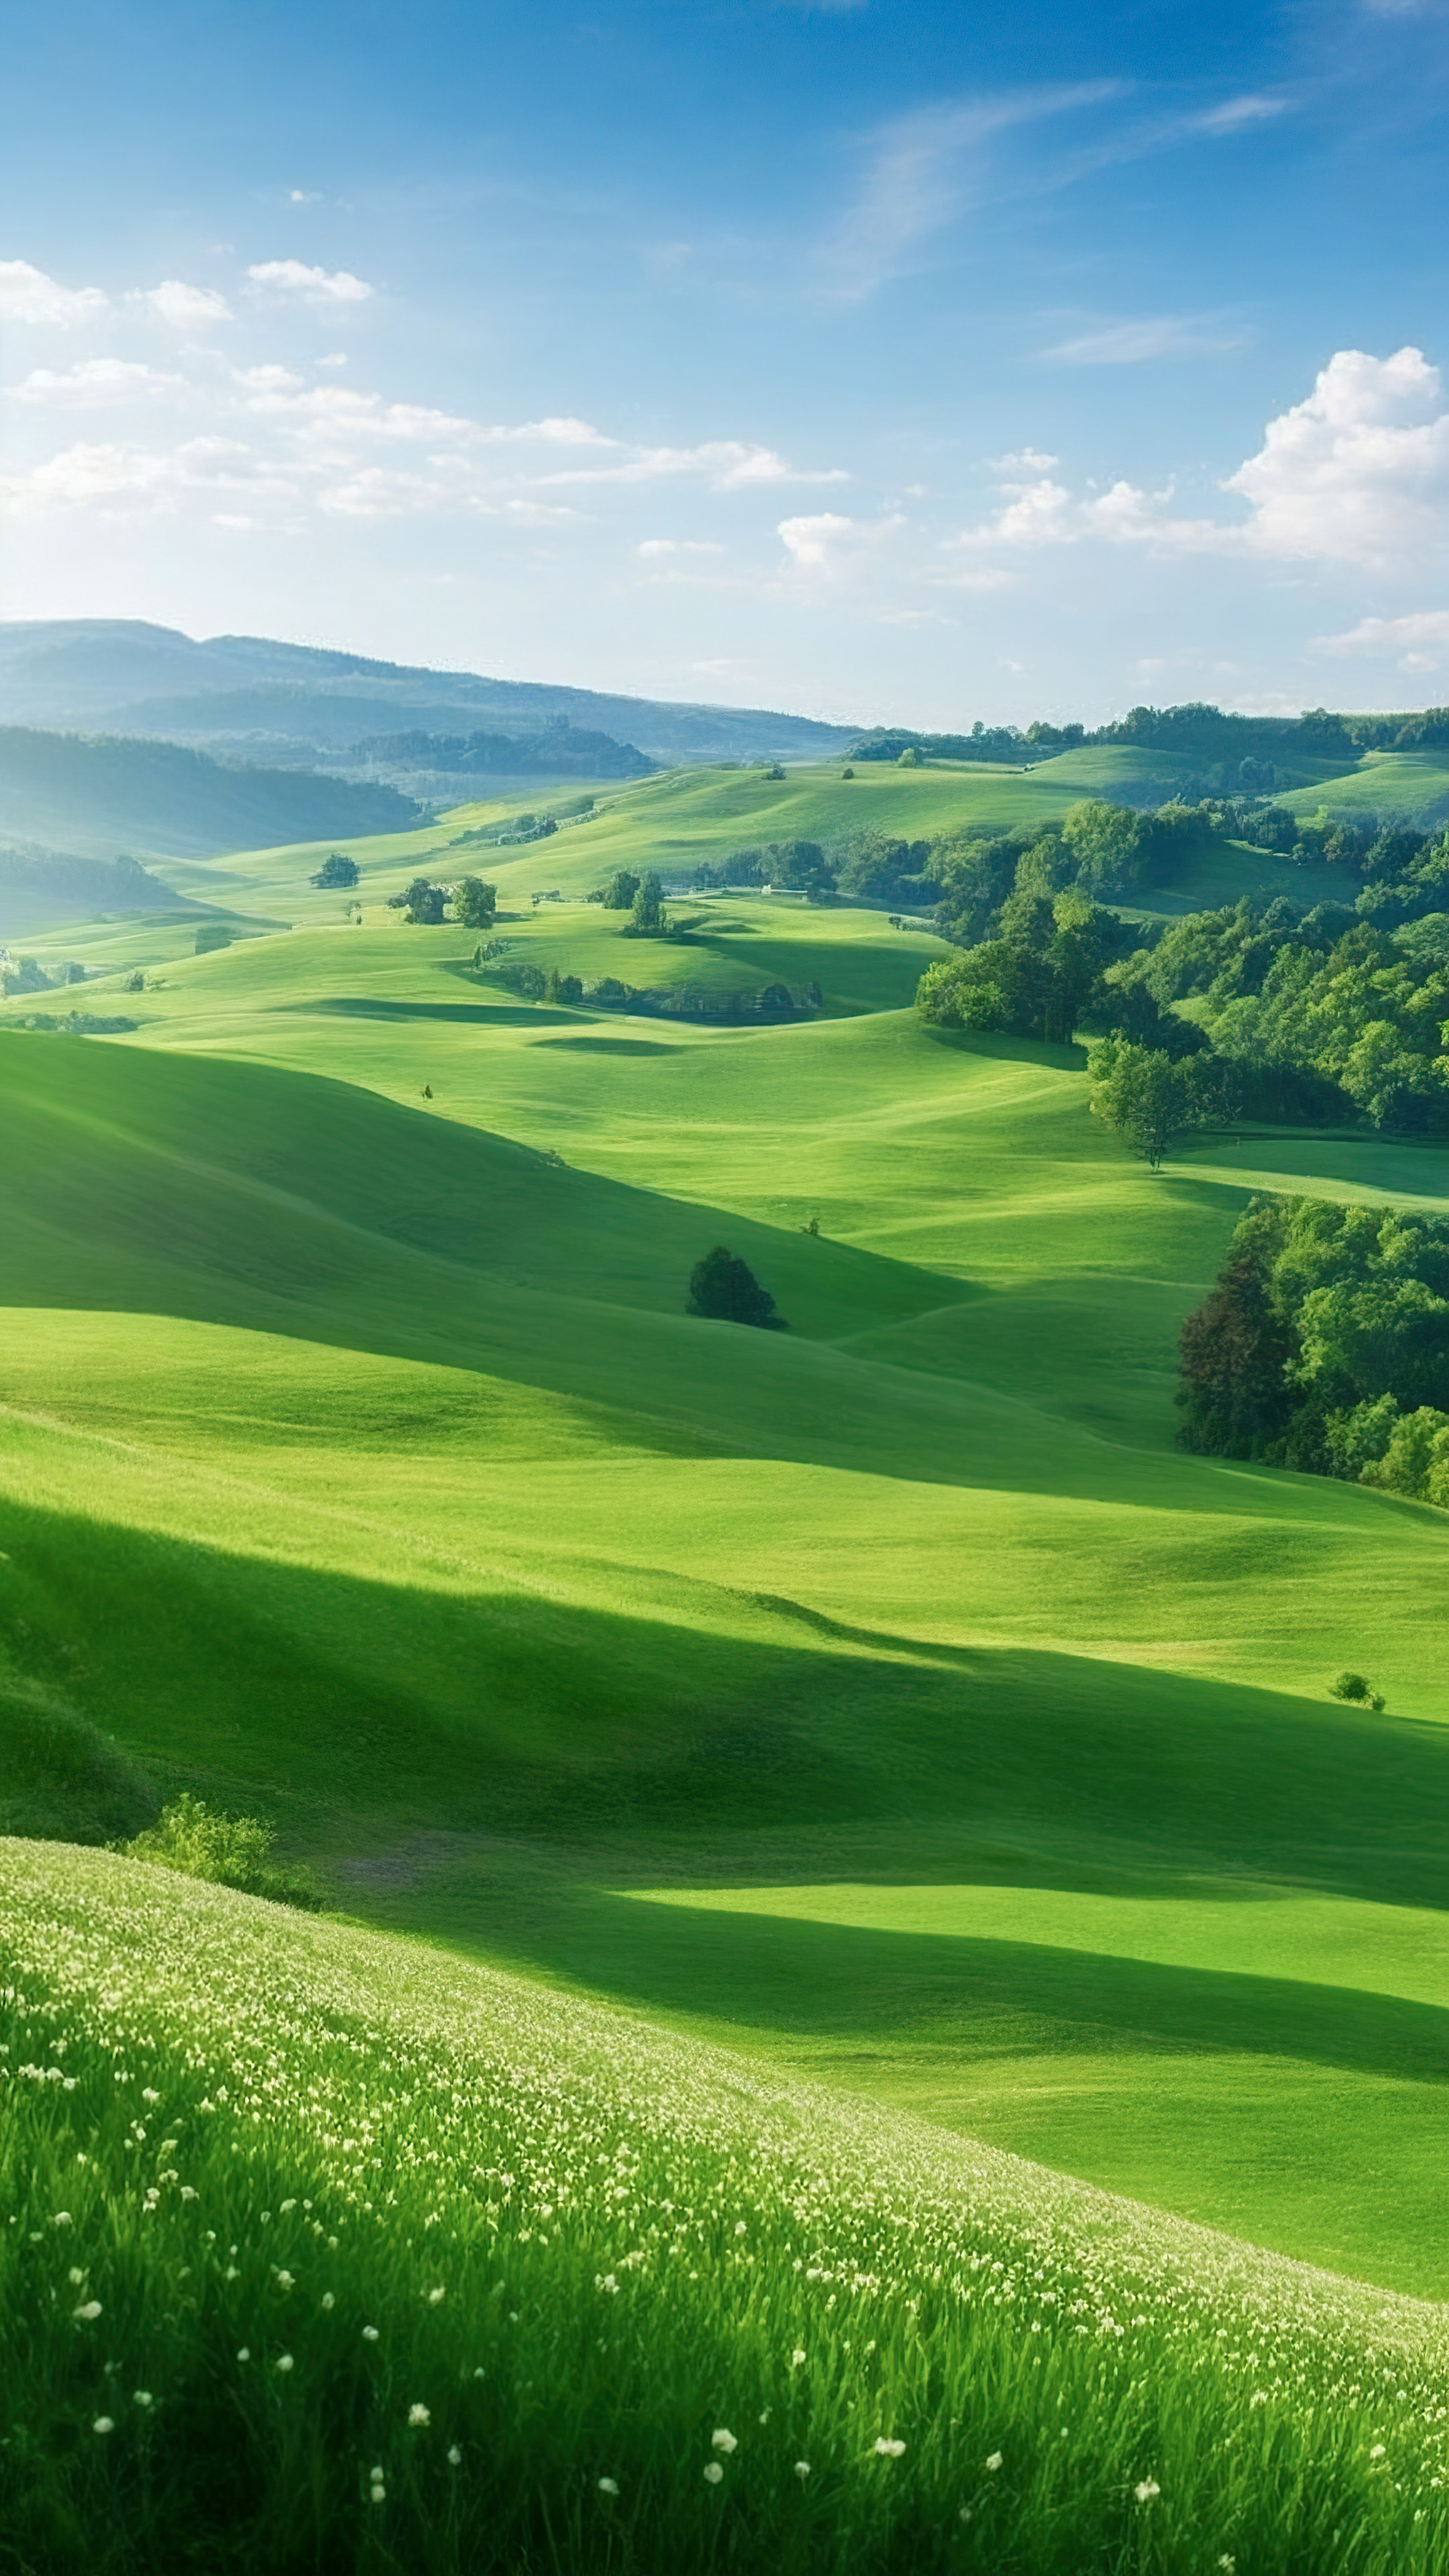 Vivez la tranquillité avec notre joli fond d'écran de nature, dépeignant une scène paisible de campagne avec des collines ondulantes, des pâturages verts et un ciel clair.